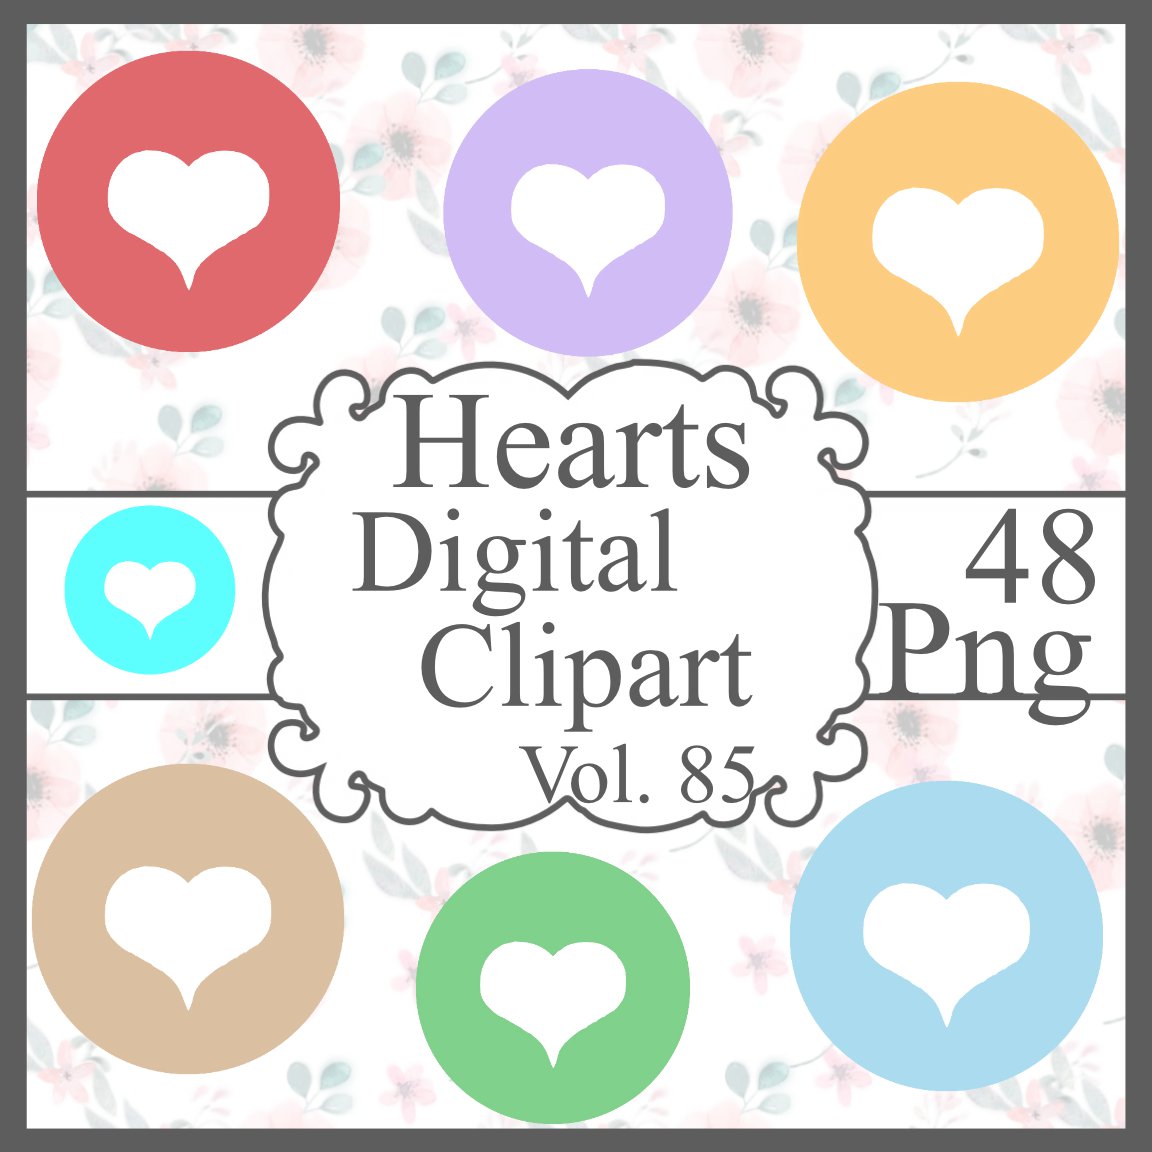 Hearts Digital Clipart Vol. 85